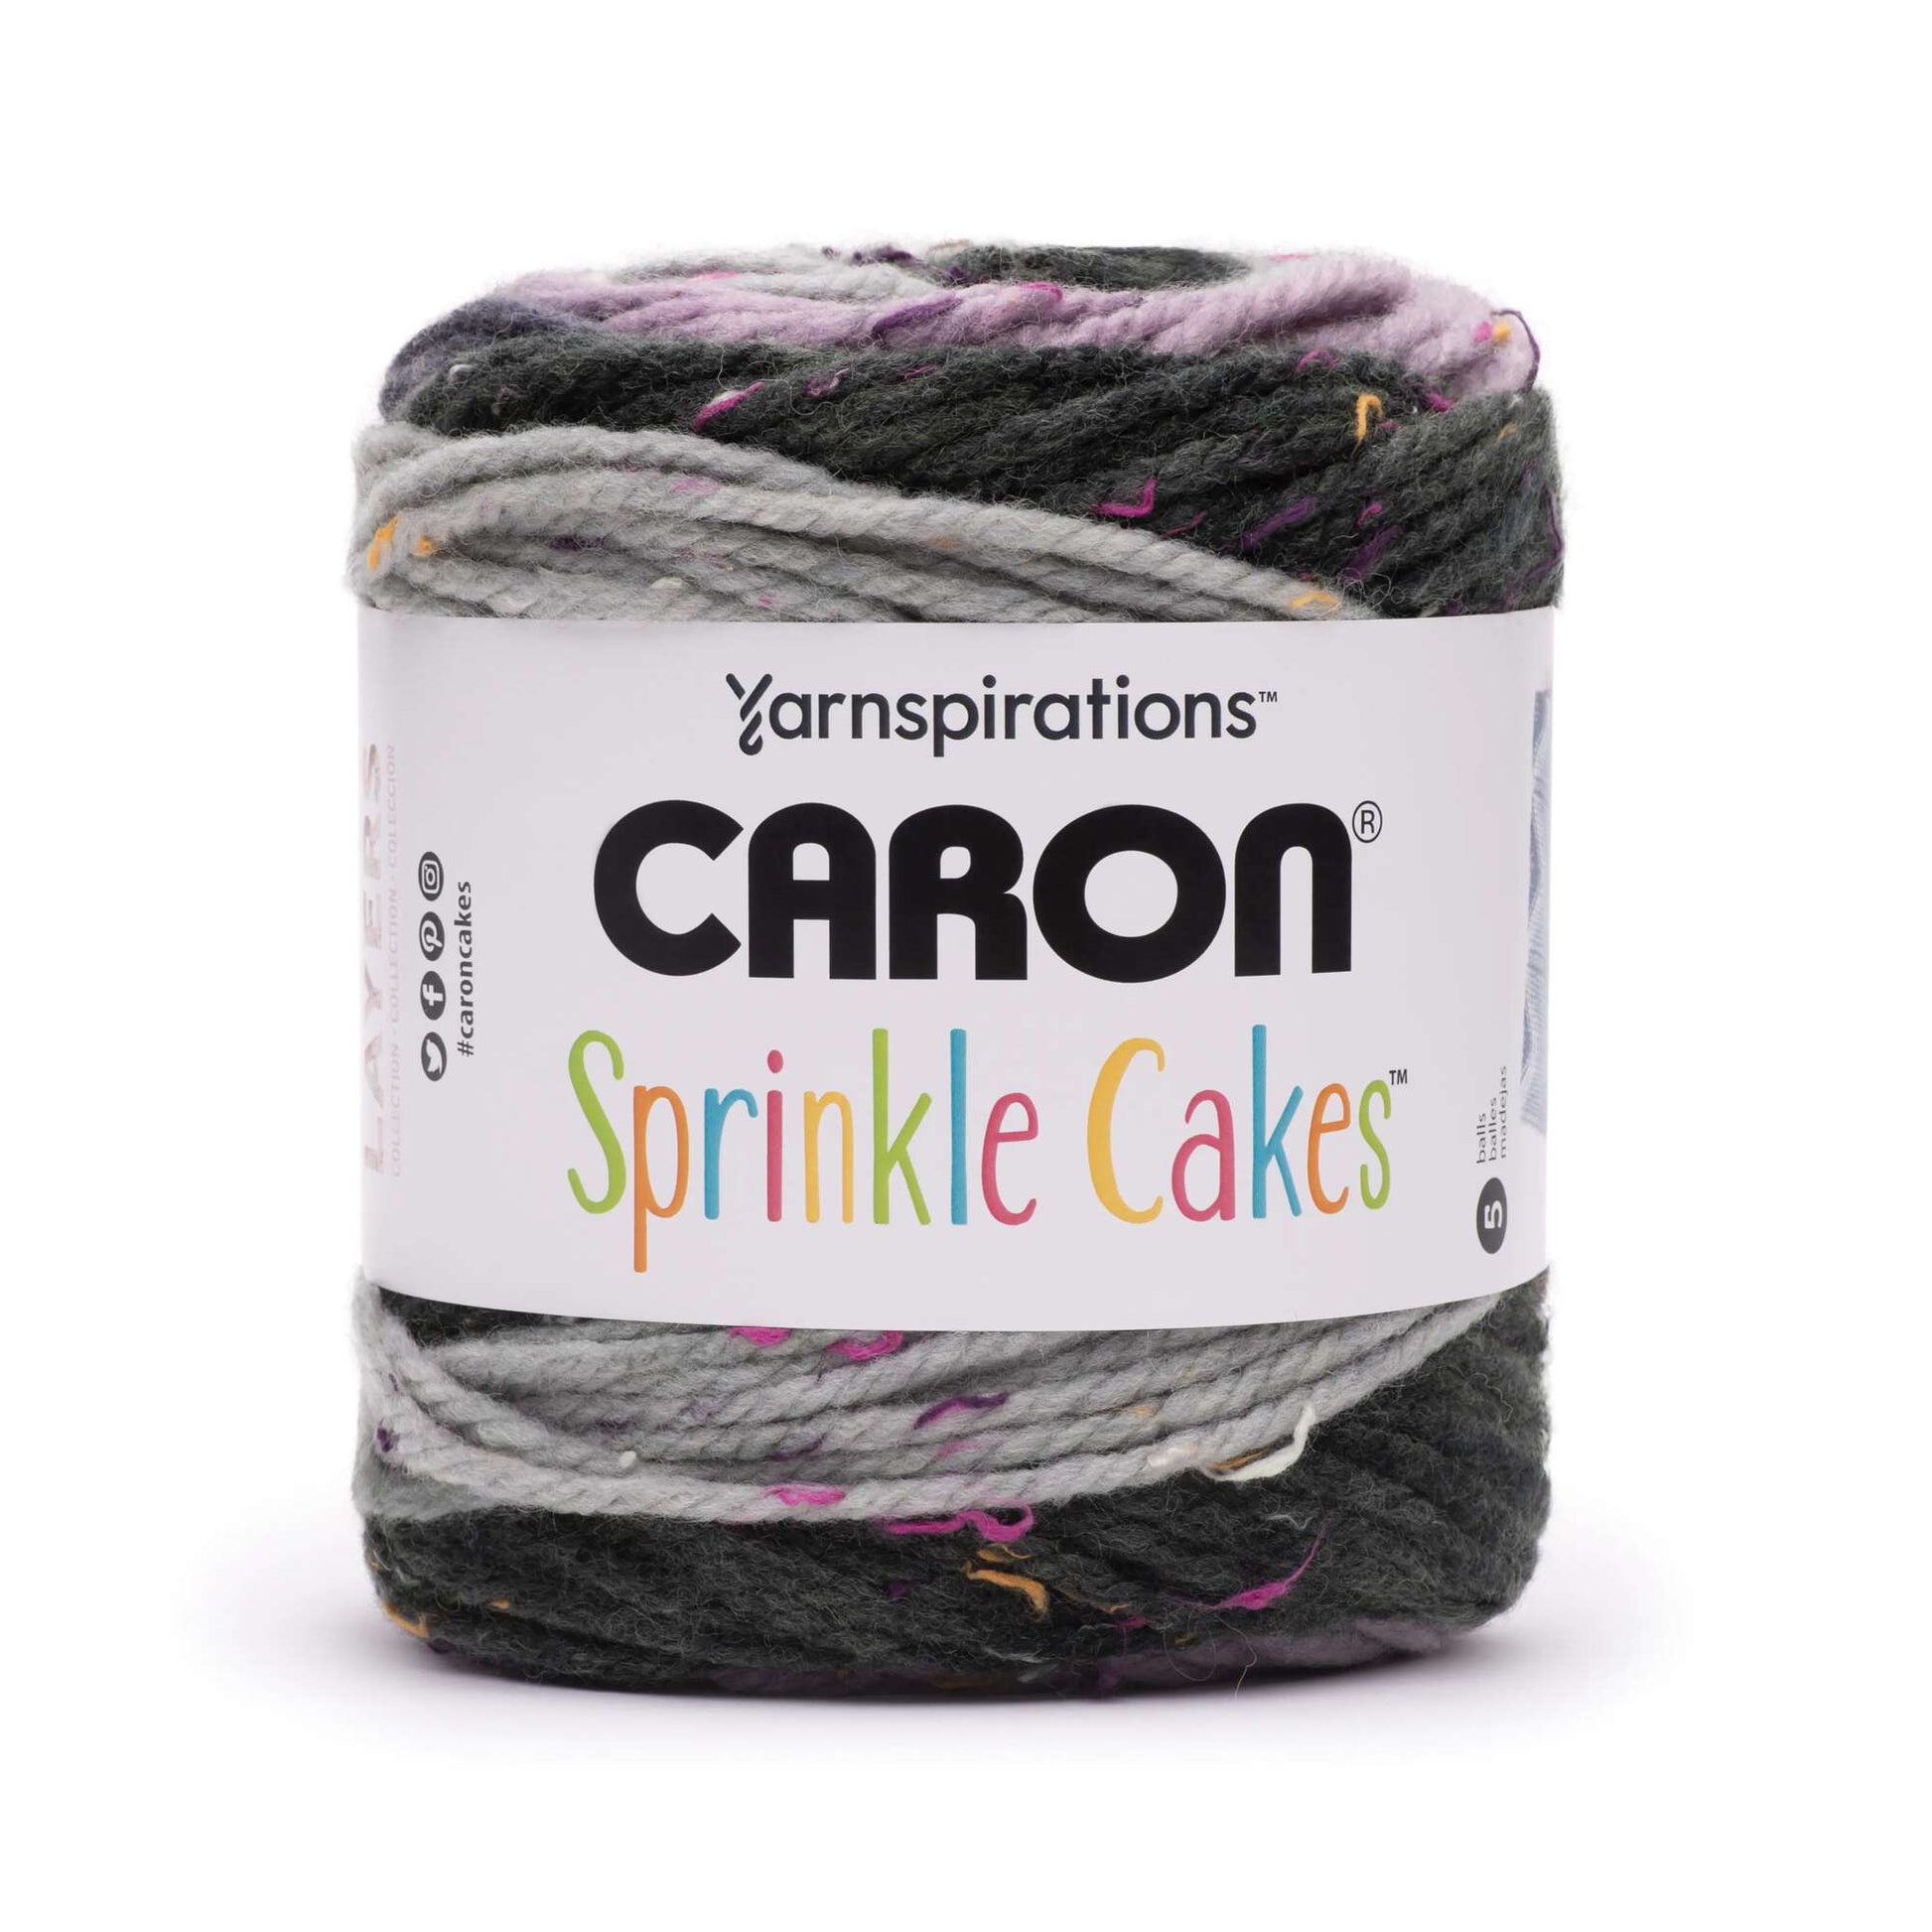 Caron Sprinkle Cakes Yarn